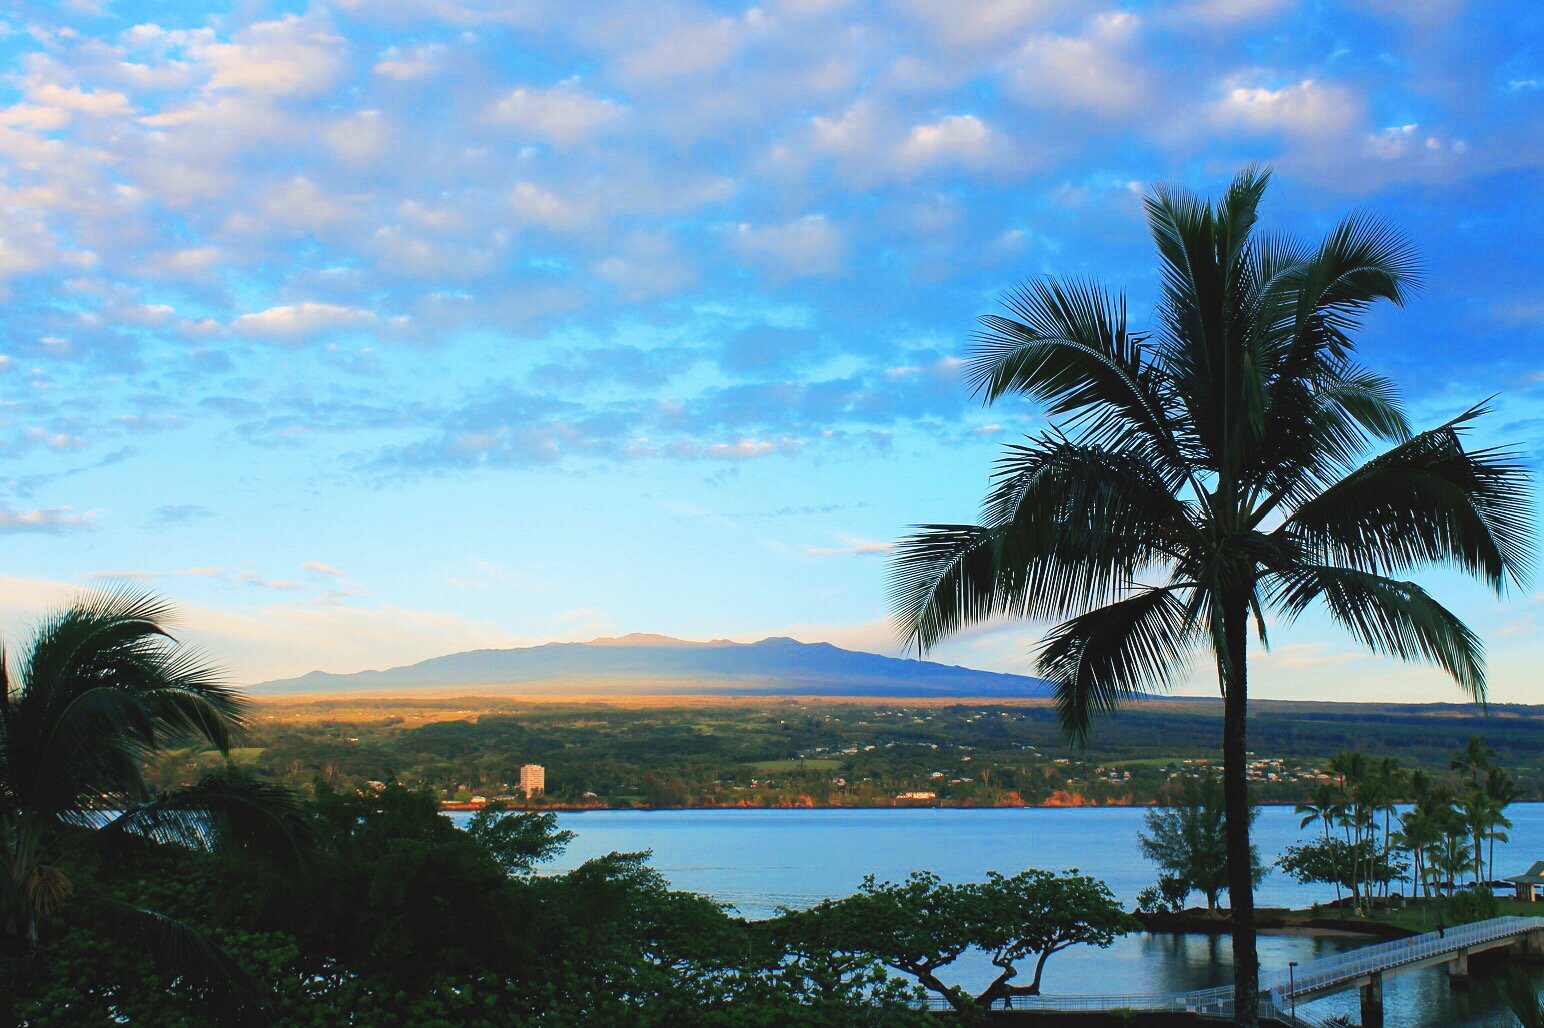 ハワイ島ツアー22 大自然のハワイ島ハイキング6日間の旅